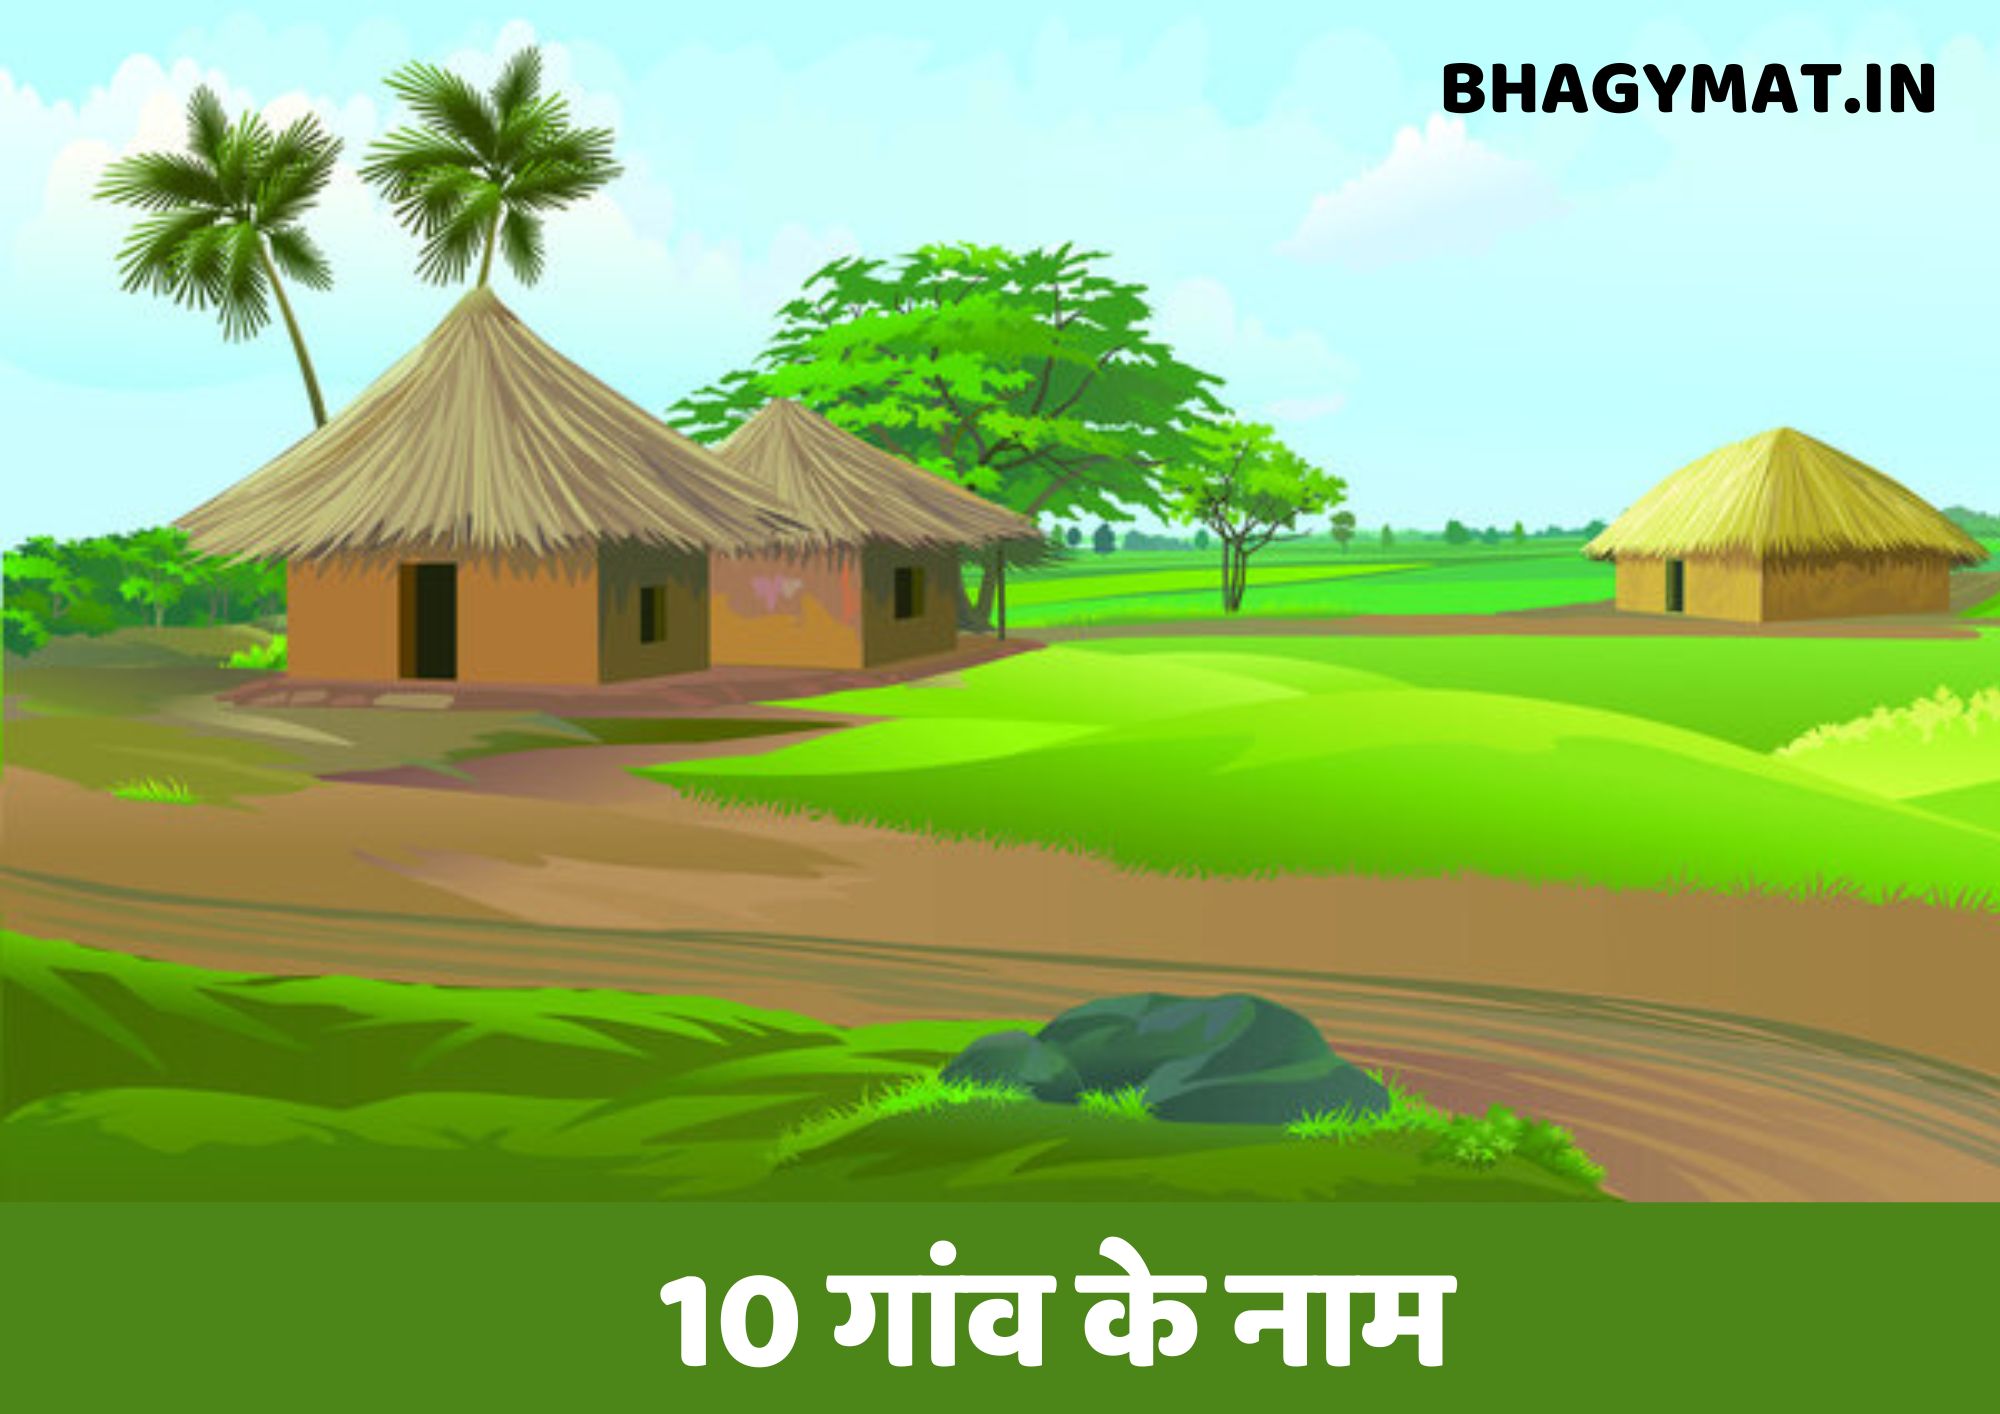 10 गांव के नाम हिंदी में (10 Gaon Ke Naam In Hindi) - 10 Village Names In Hindi | 10 Gaon Ke Naam Hindi Me